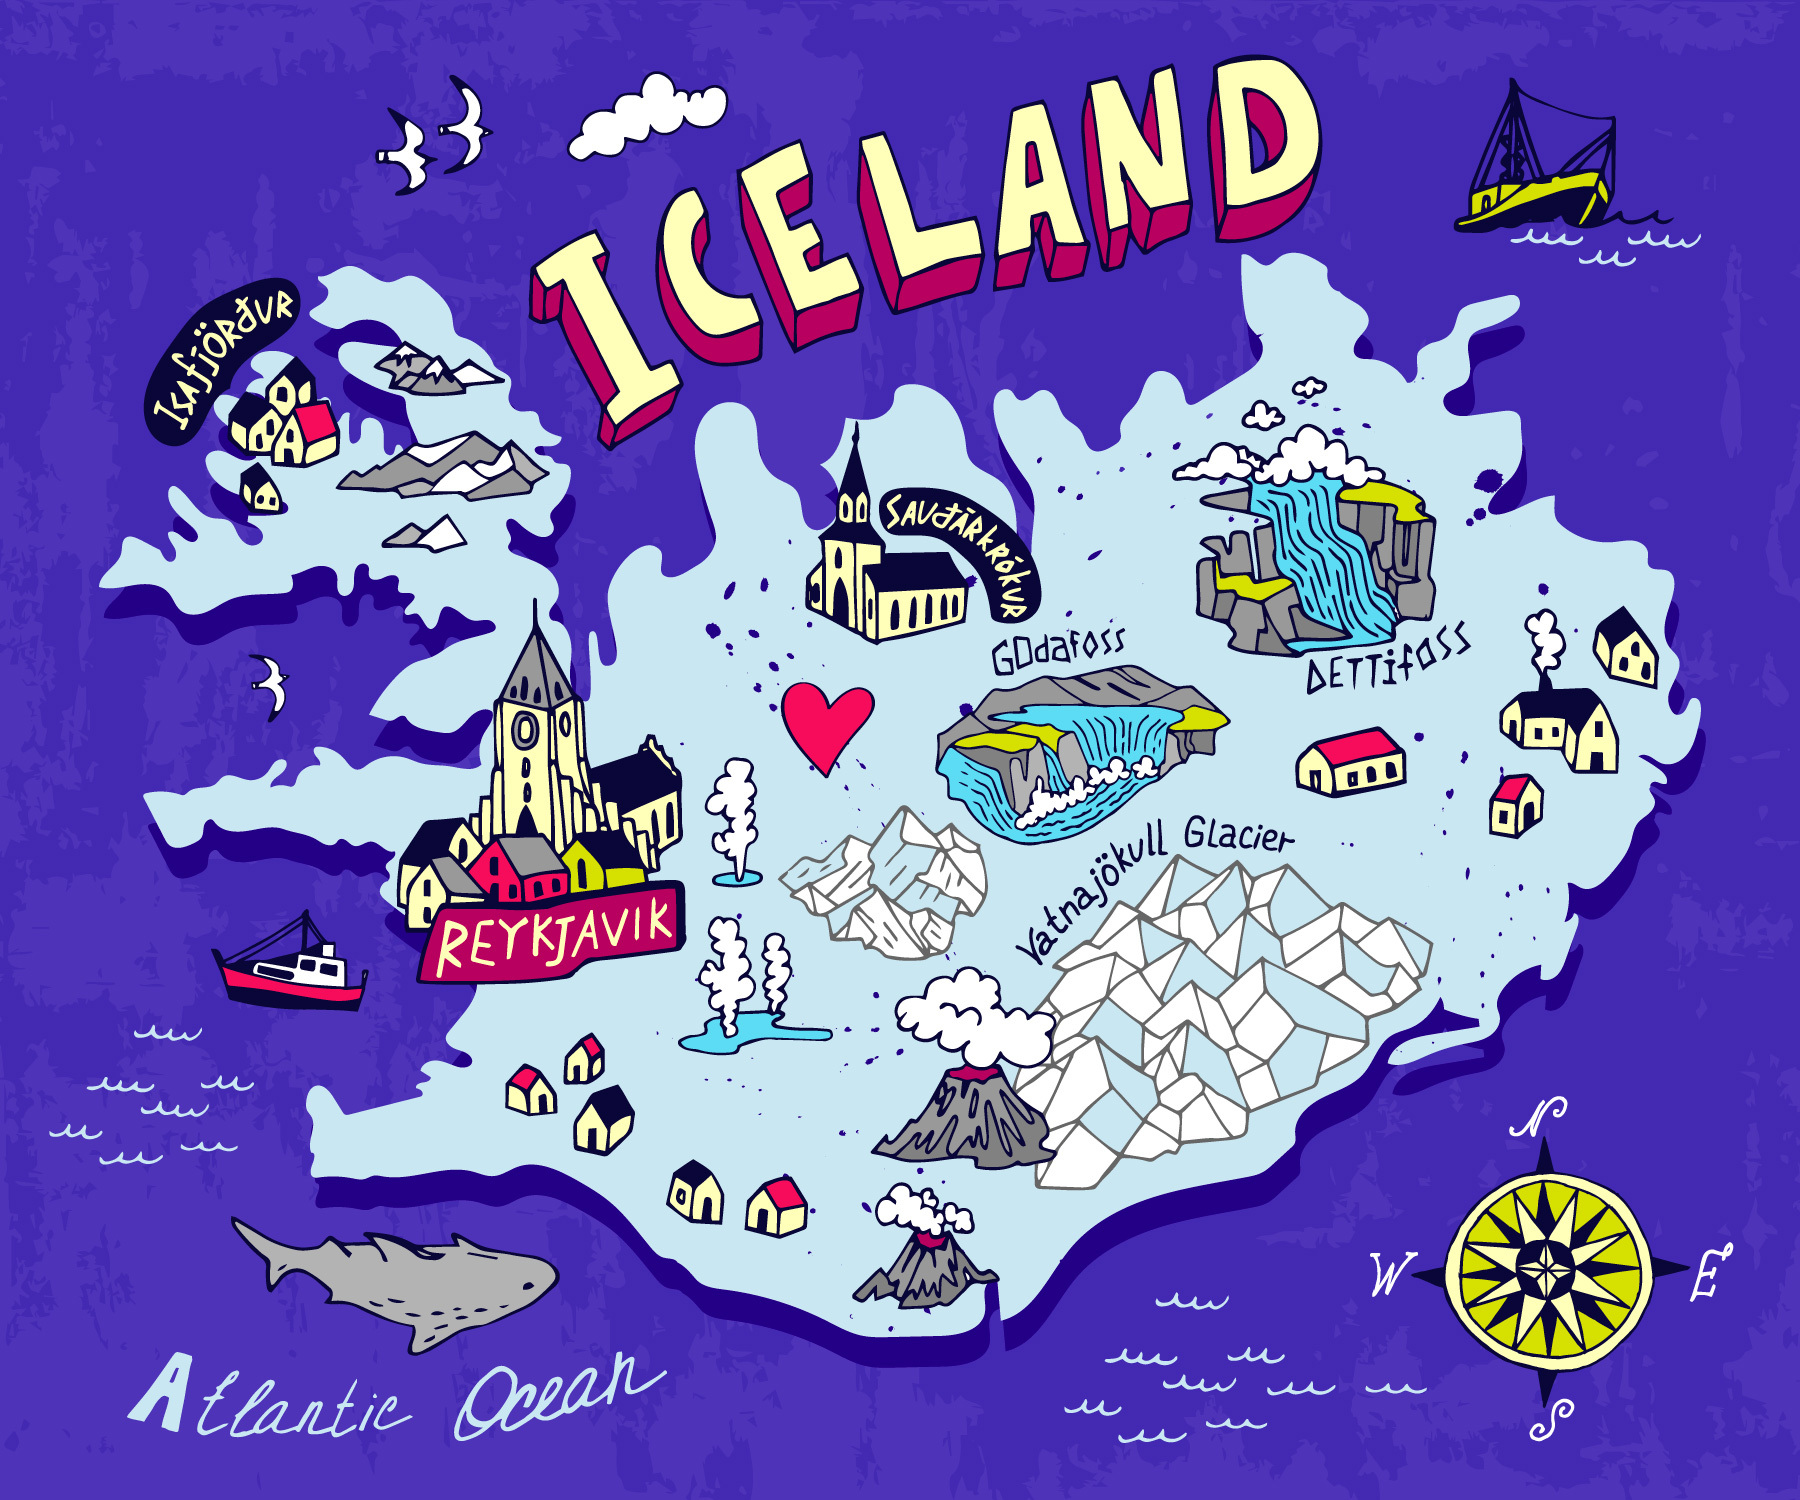 Карта Исландии